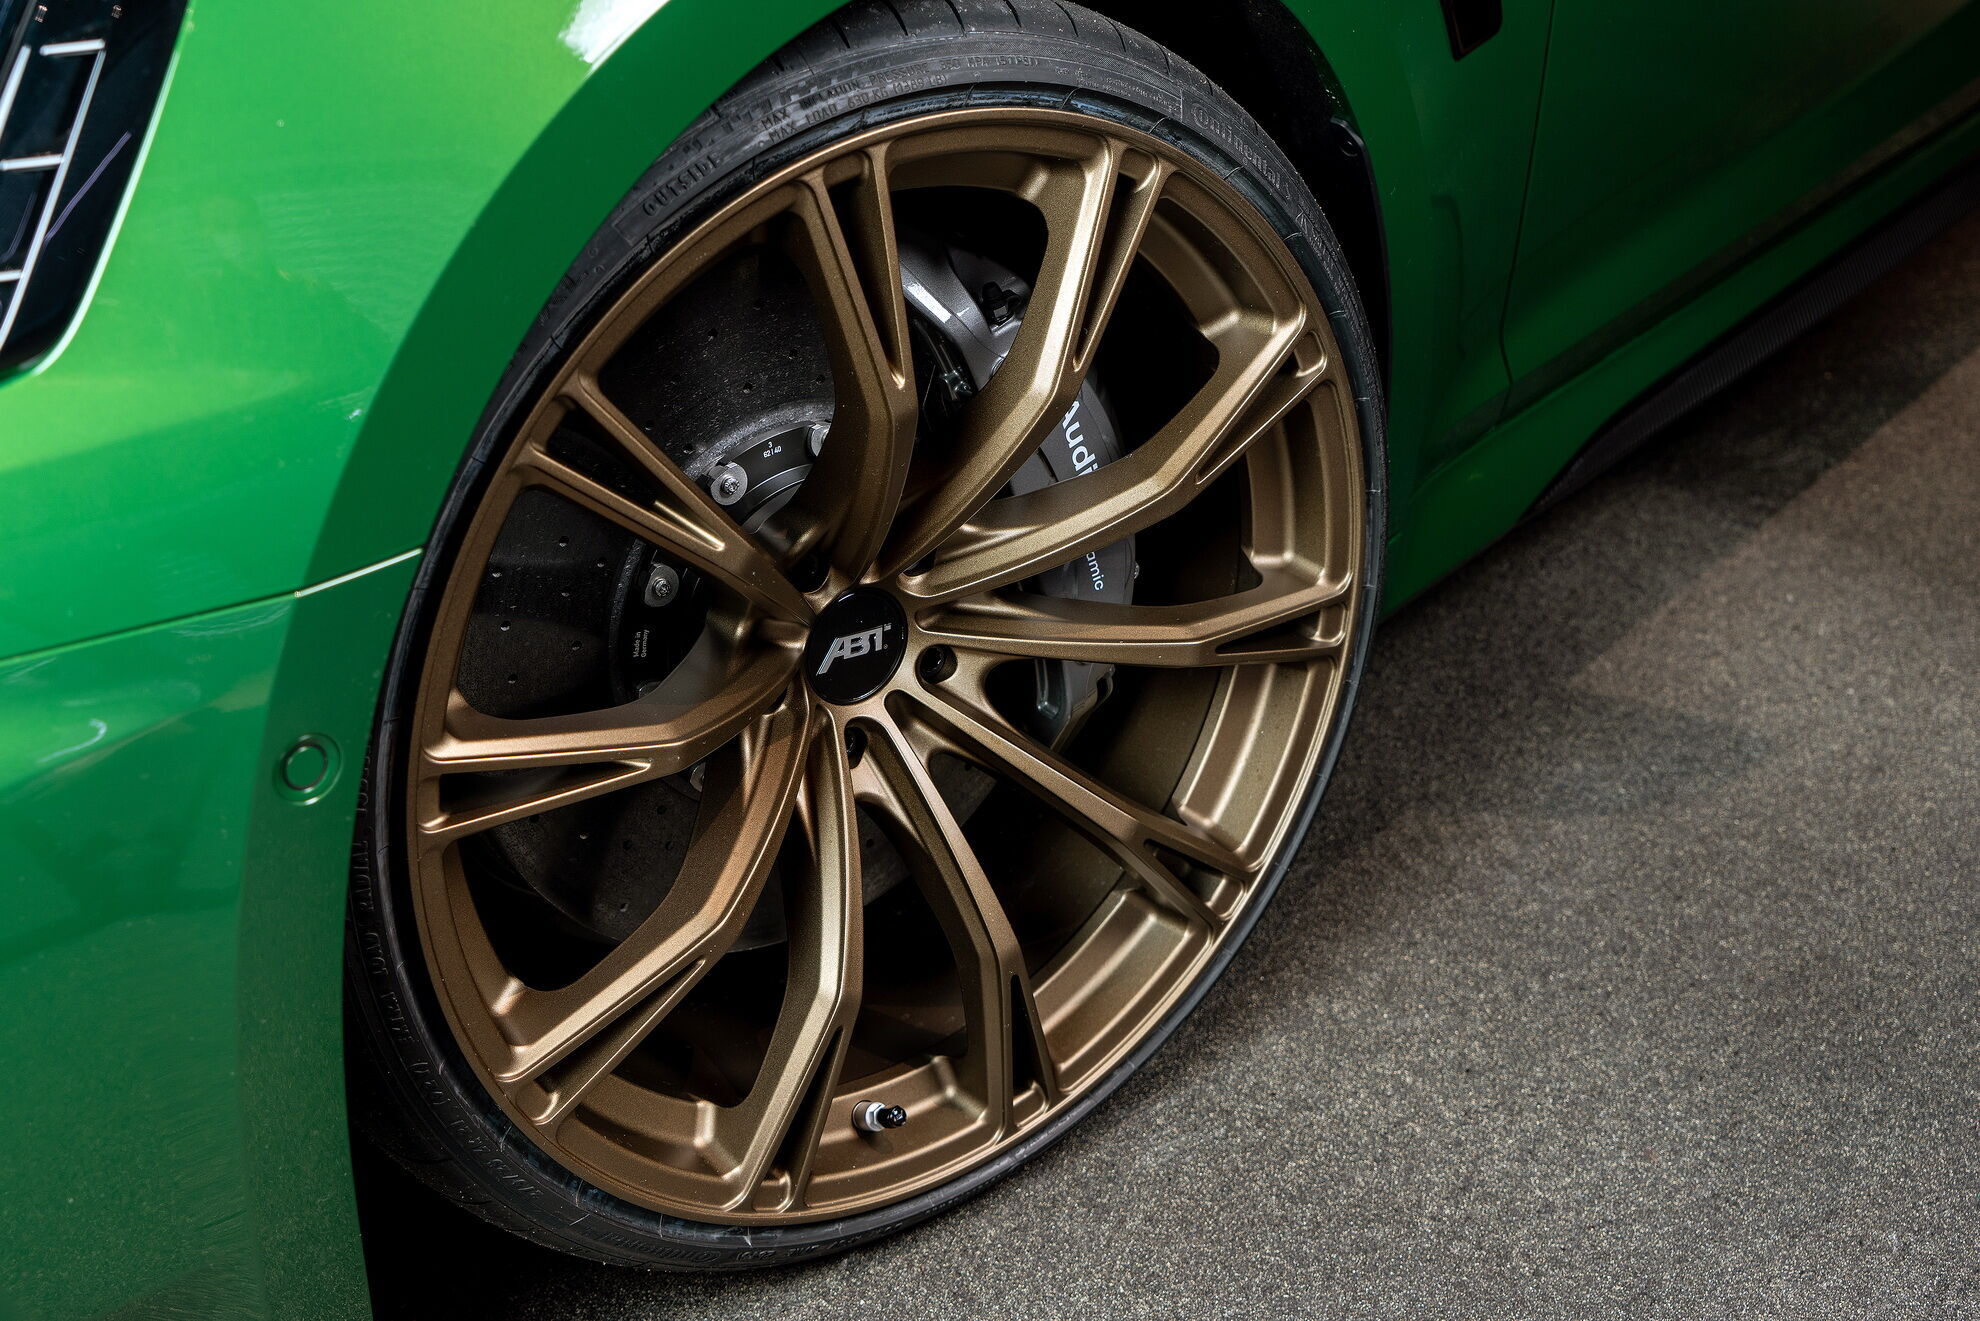 Ажурні 21-дюймові легкосплавні диски Abt Sport GR особливого кольору Racing Gold matt доповнюють образ